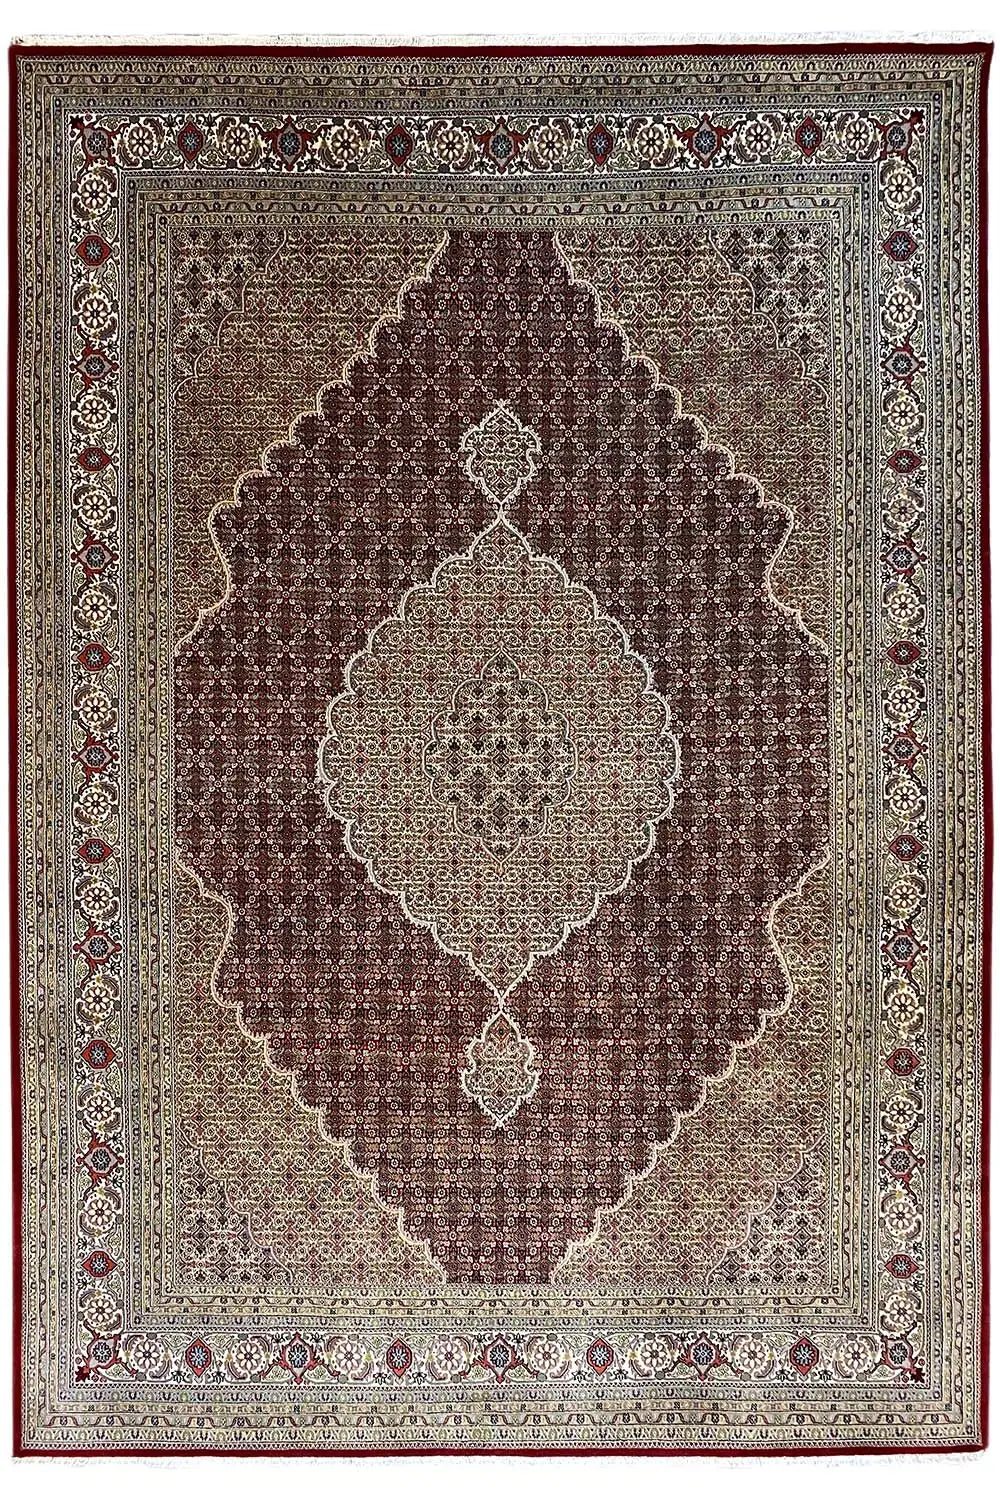 Täbriz - Mahi (351x255cm) - German Carpet Shop